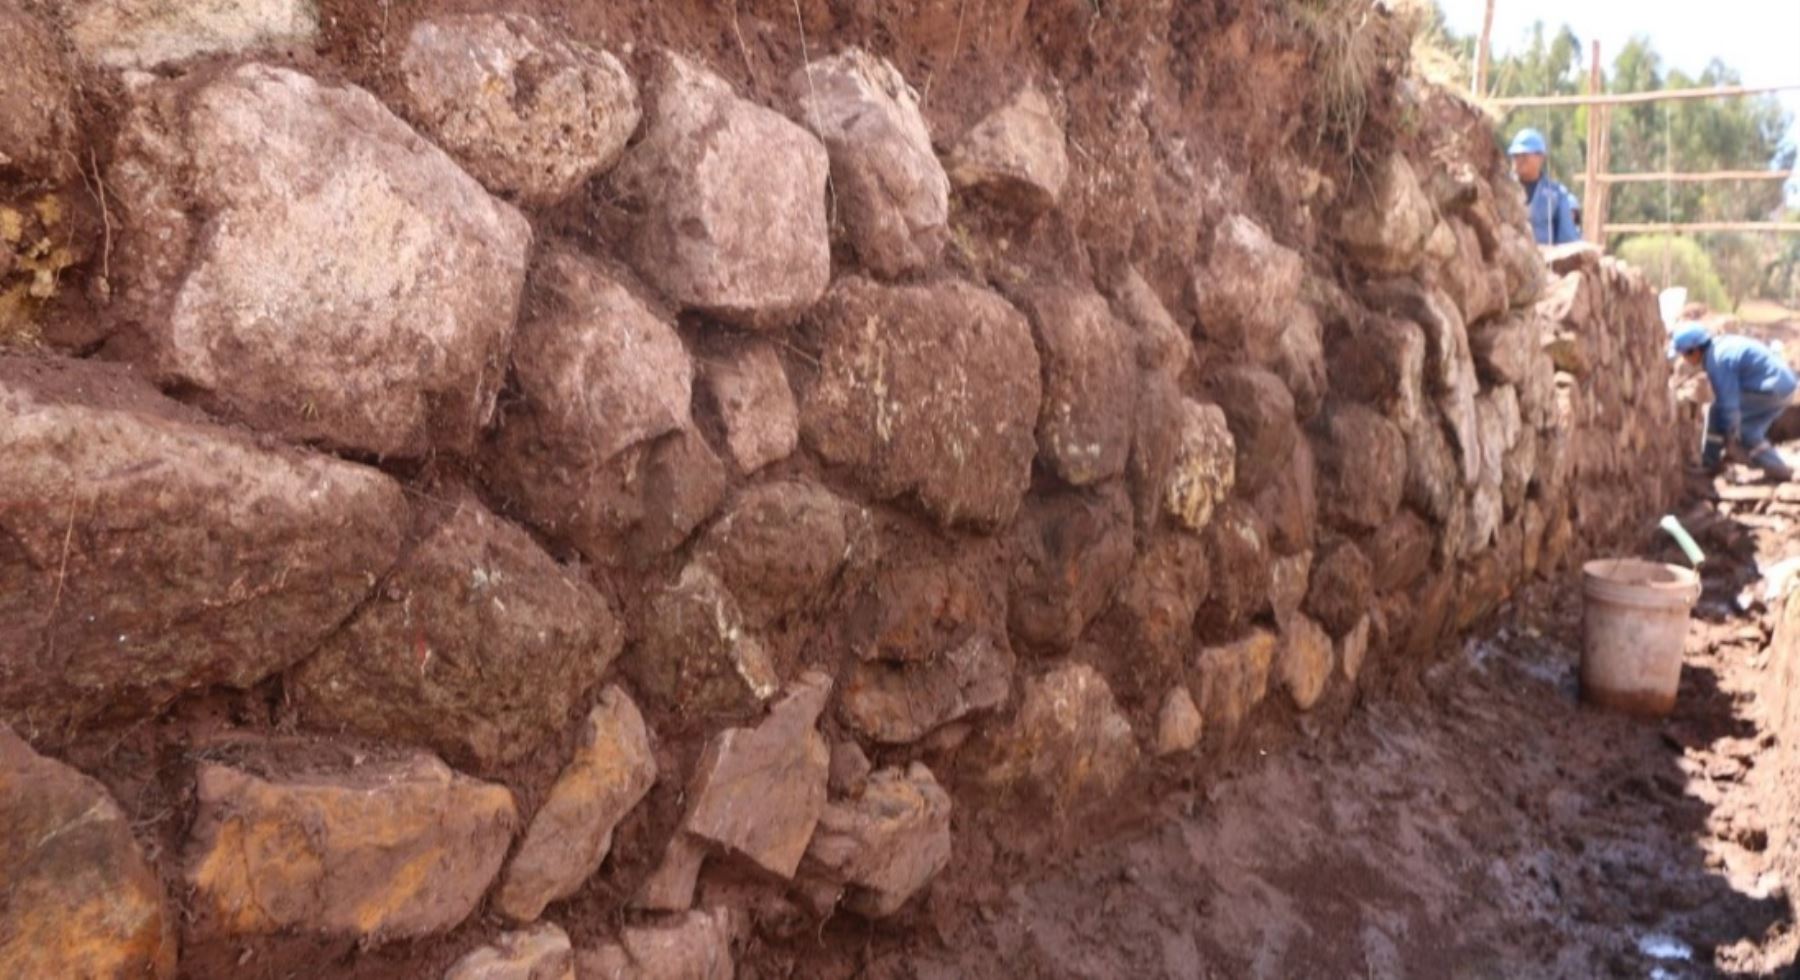 El tramo del Qhapaq Ñan o Gran Camino Inca que conecta con el Chinchaysuyo), el cual viene siendo rehabilitado, sería el más importante del extenso y complejo sistema vial incaico, según los estudios realizados por el Ministerio de Cultura.